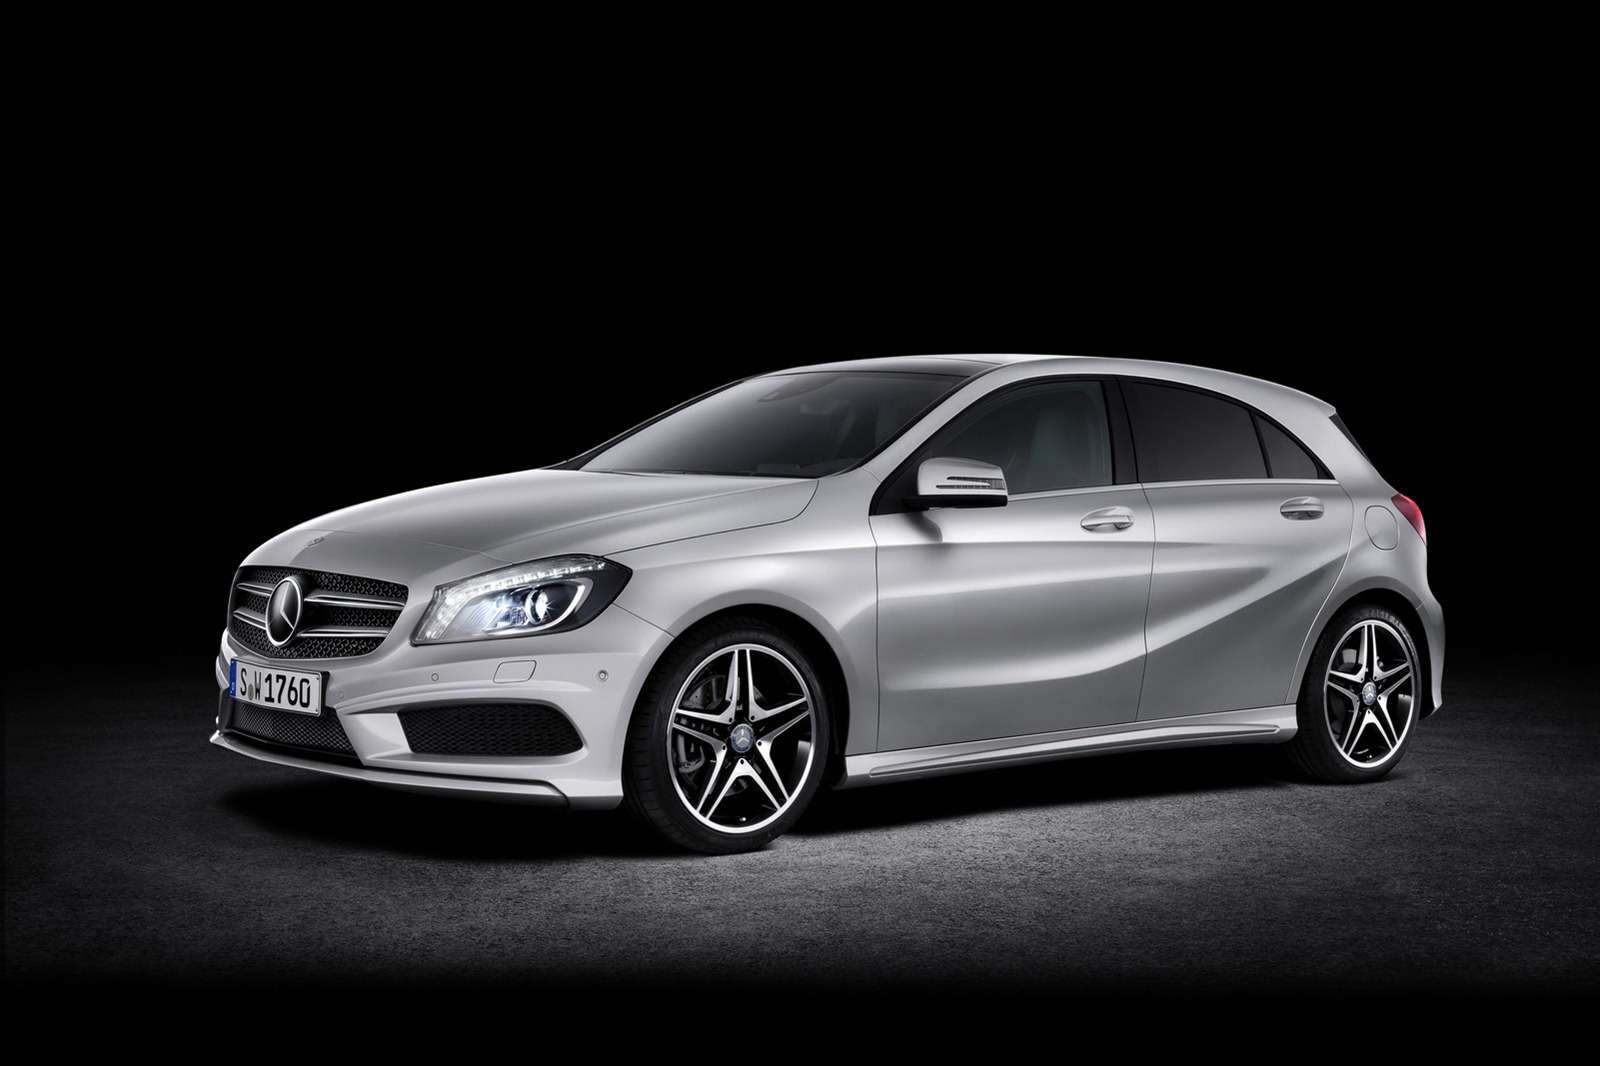 Oficjalne ceny nowego Mercedesa klasy A 2012 rozpoczęto